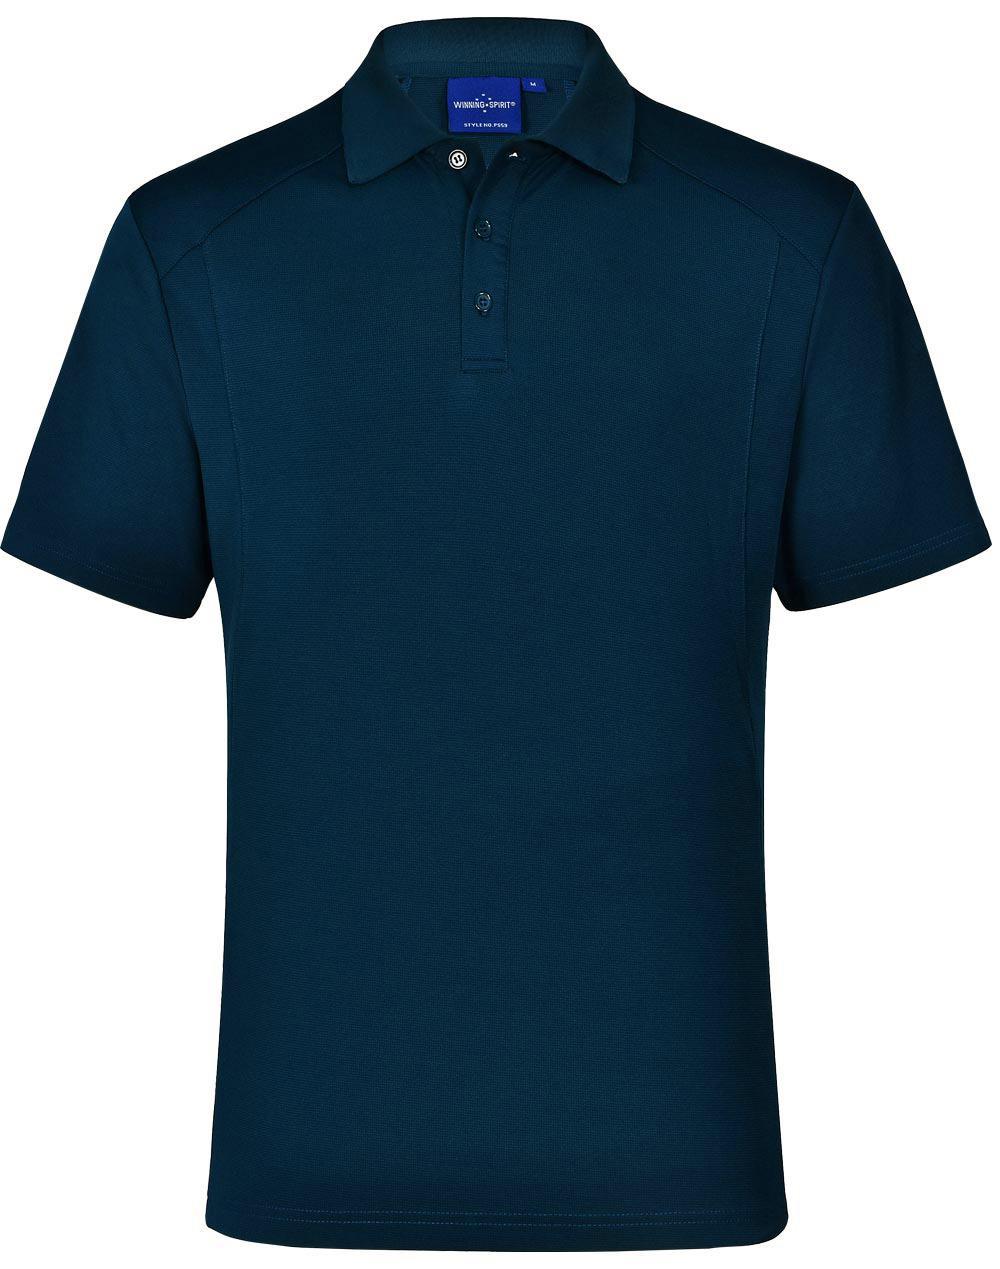 5 of PS59 Sz XL LUCKY BAMBOO Eco fabric Mens Polo Shirt Ocean Blue